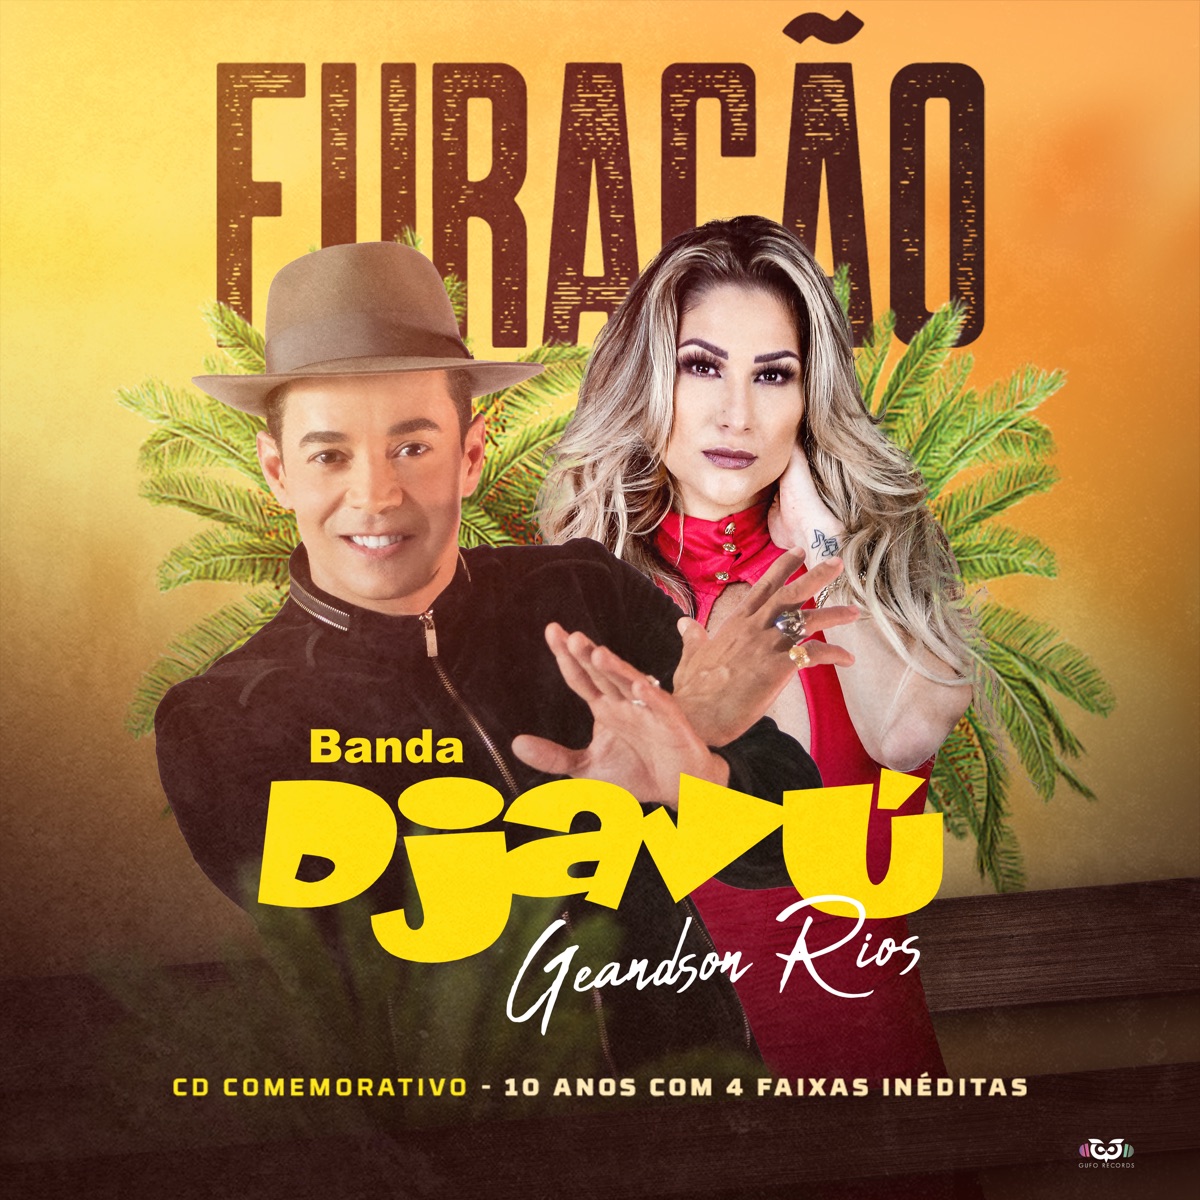 Banda Djavu & Dj Juninho Portugal Ao Vivo em Natal (Ao Vivo) de Banda Djavu  & Dj Juninho en Apple Music